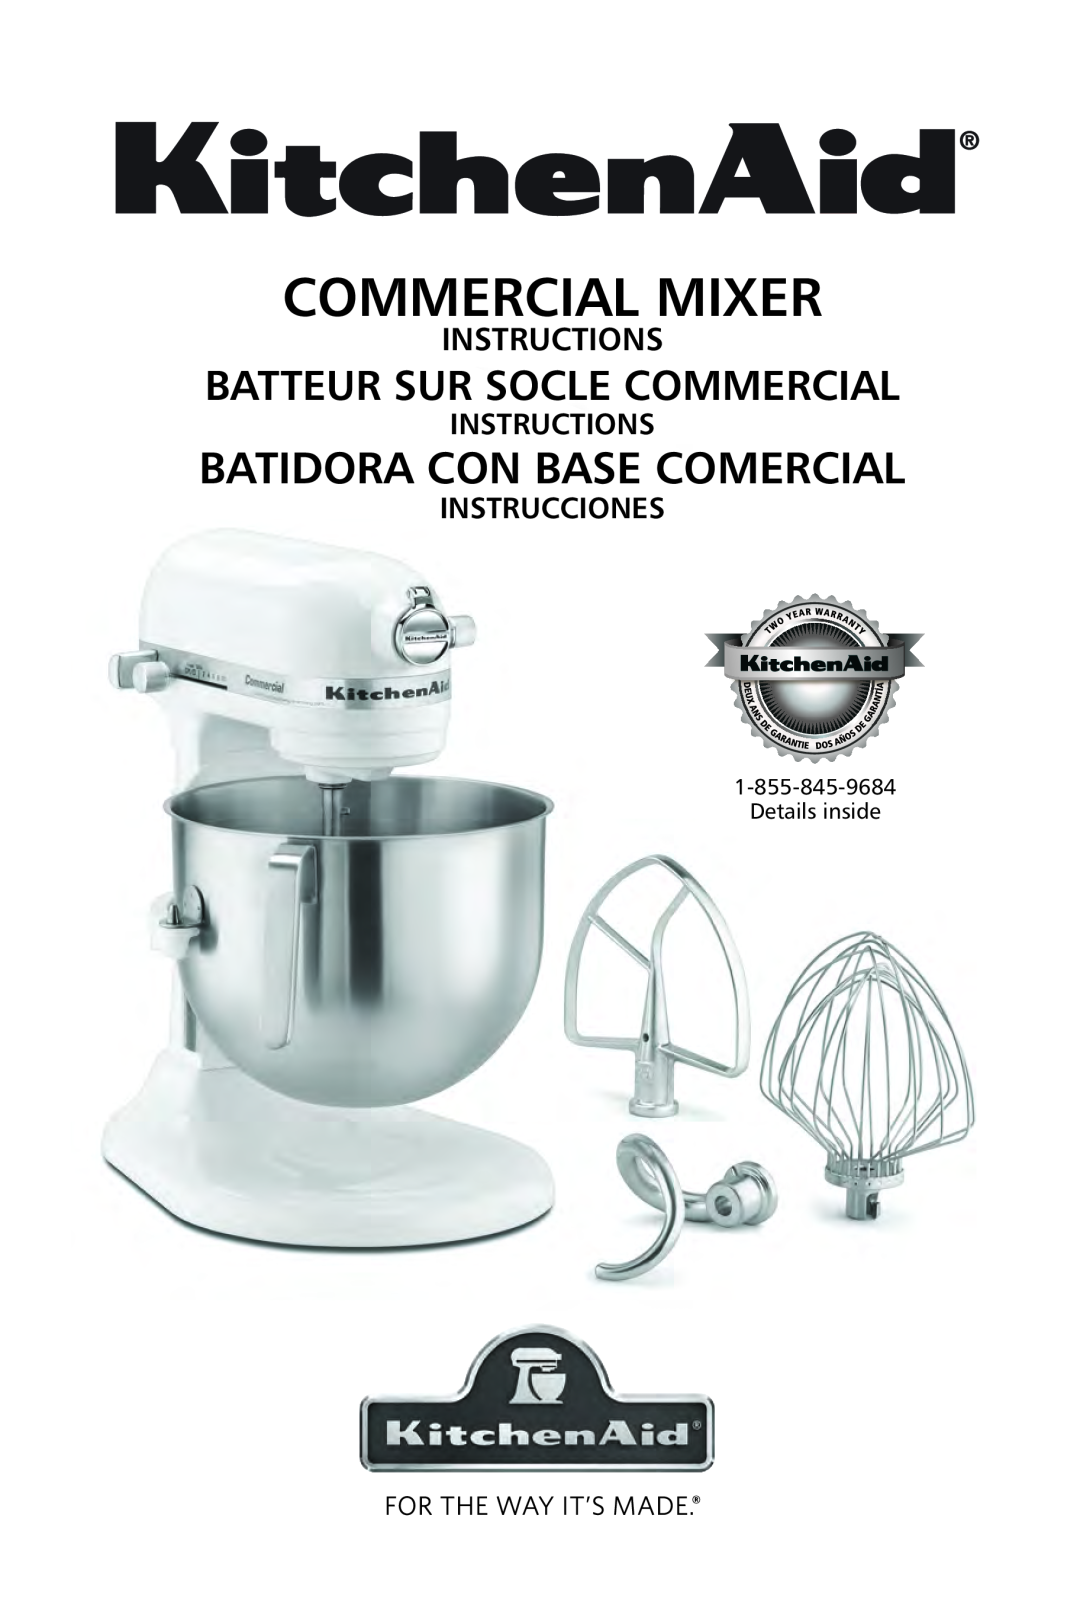 KitchenAid KSM7990 manual COMMERCIAL MIXER Commercial ixer, Batidora con base comercial, Batteur sur socle commercial 